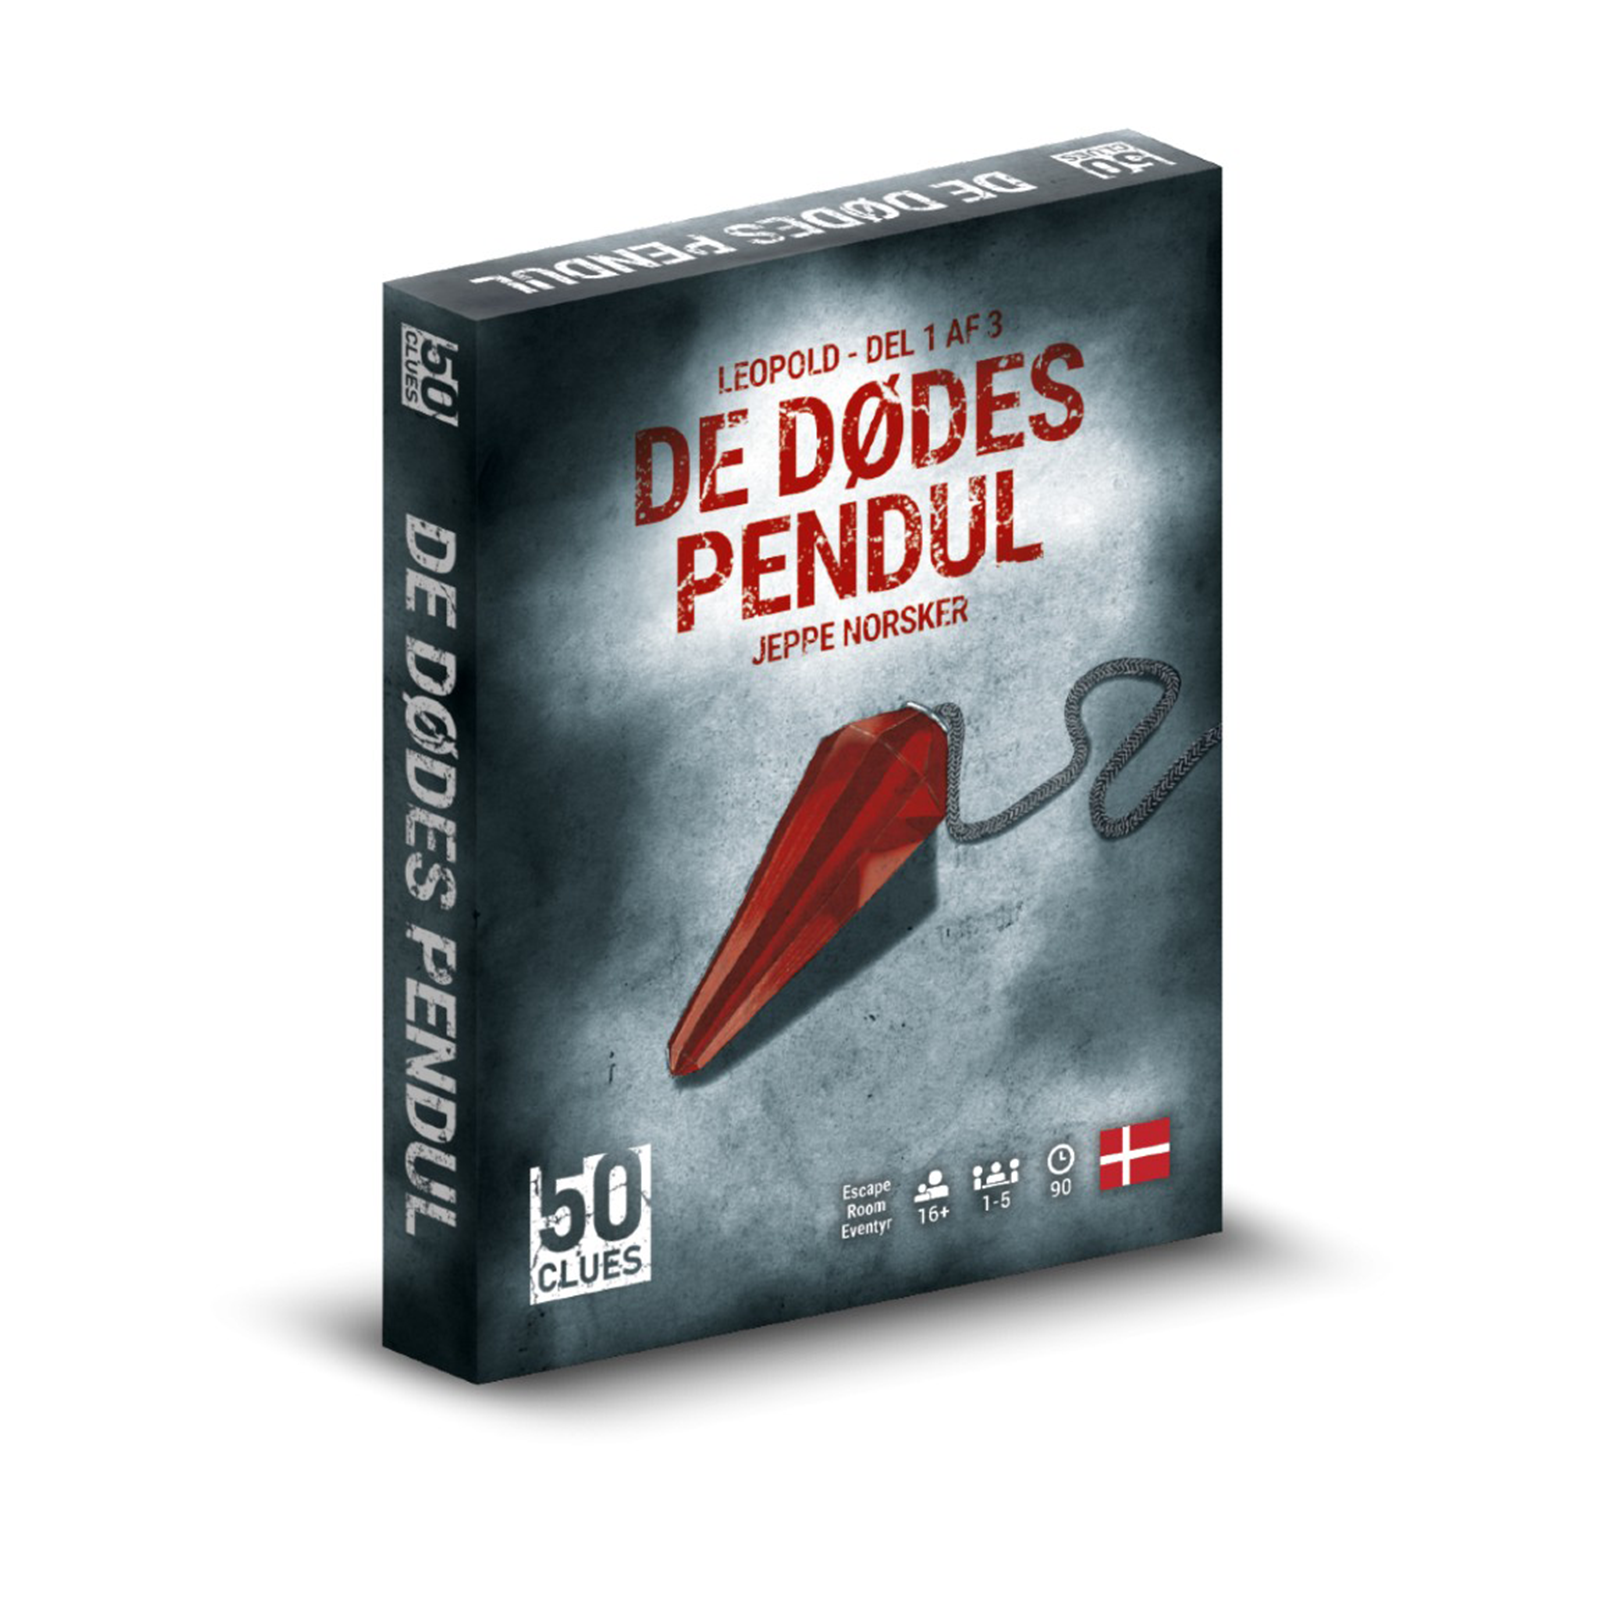 Billede af 50 Clues (Leopold) De Dødes Pendul (del 1 af 3)